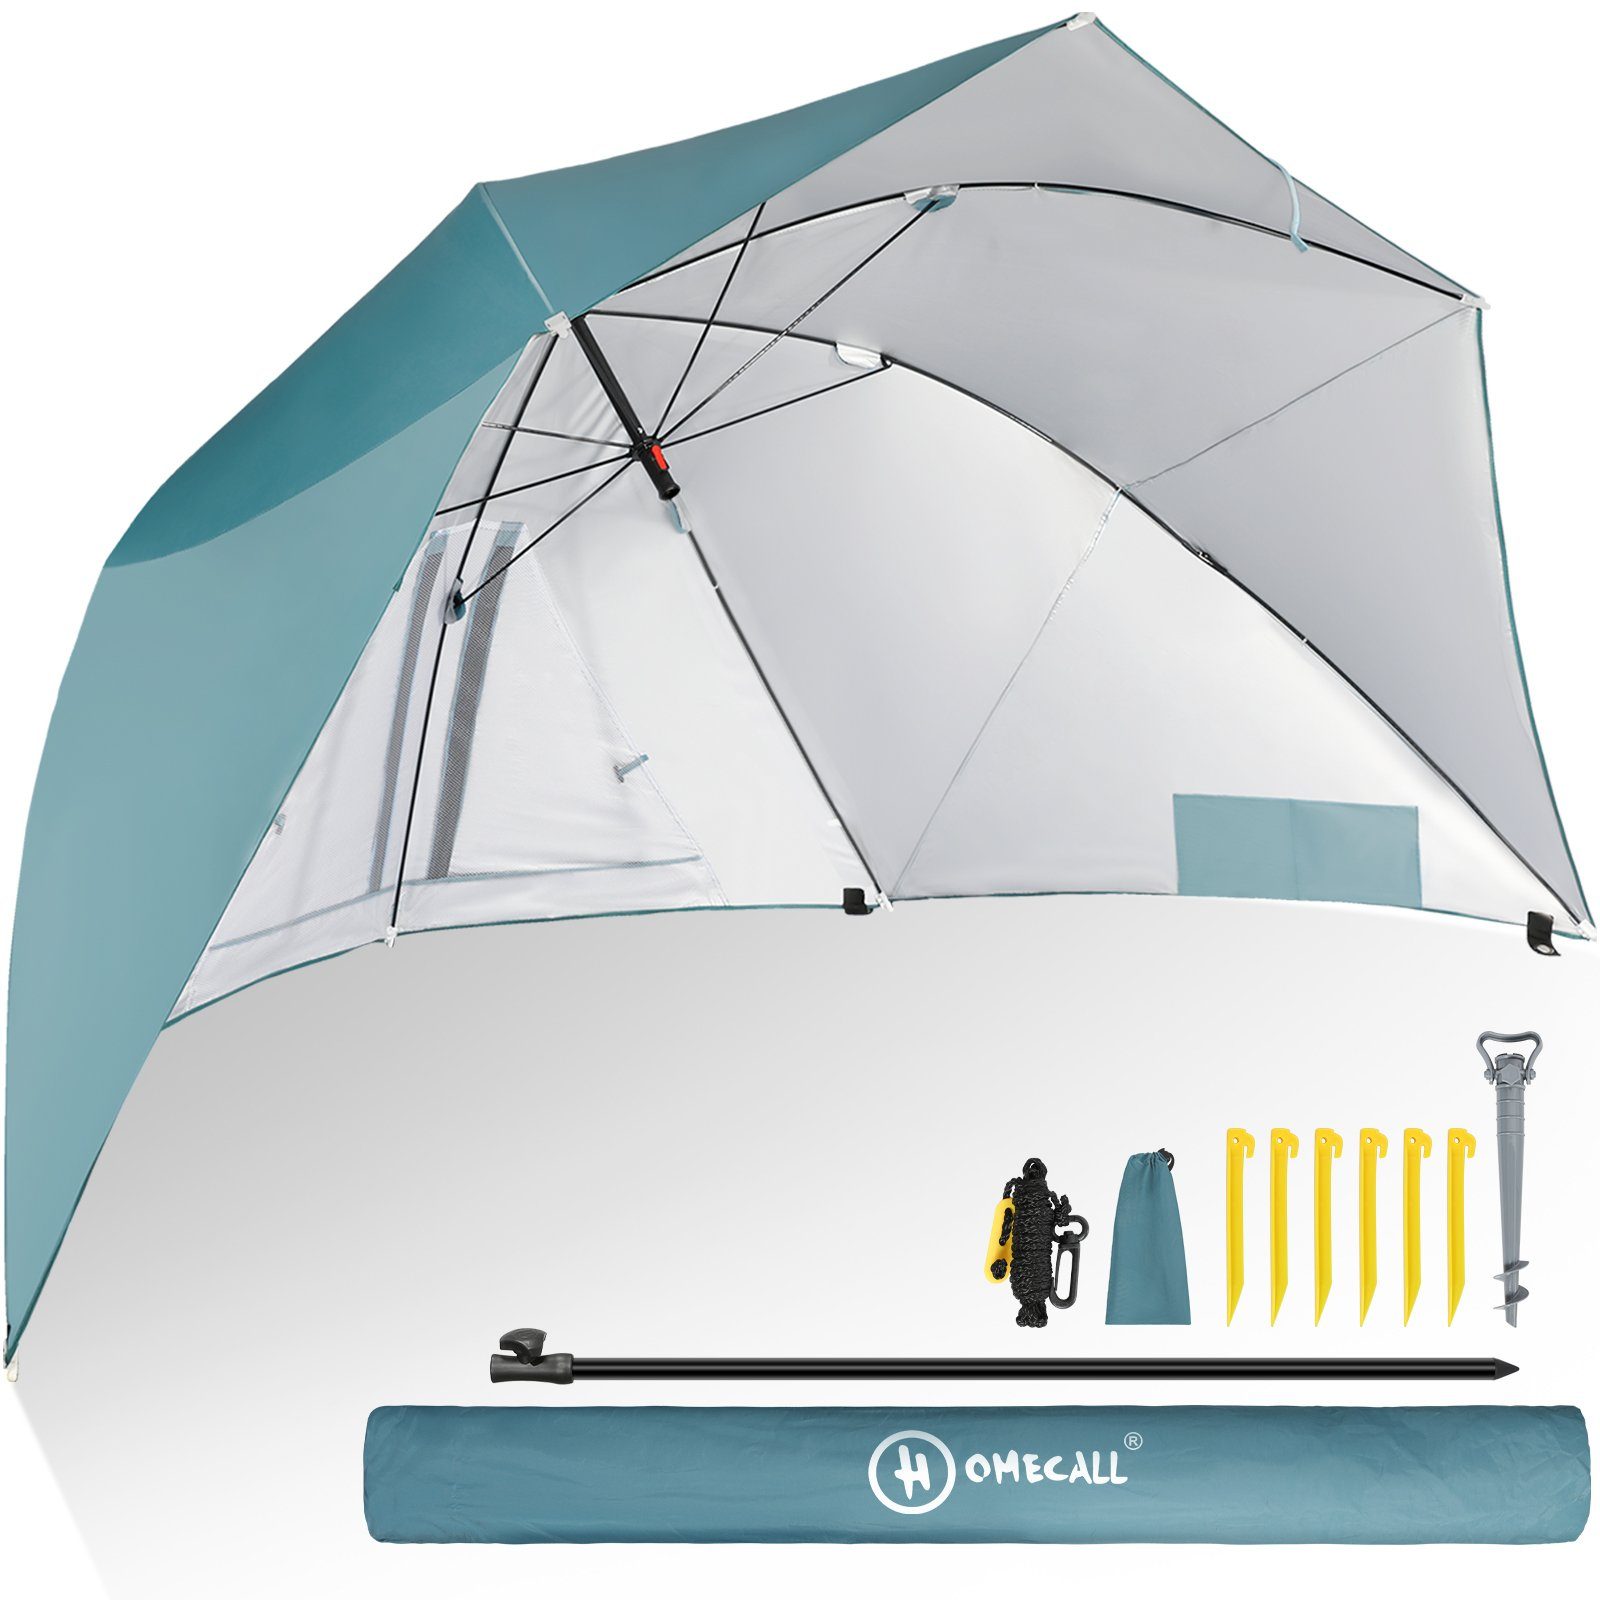 HOMECALL Strandmuschel mit umbrella system UV-resistentes 50+ Khaki, Umfunktionieren zum Sonnenschirm Strandschirm, für 2-3 Personen Blau